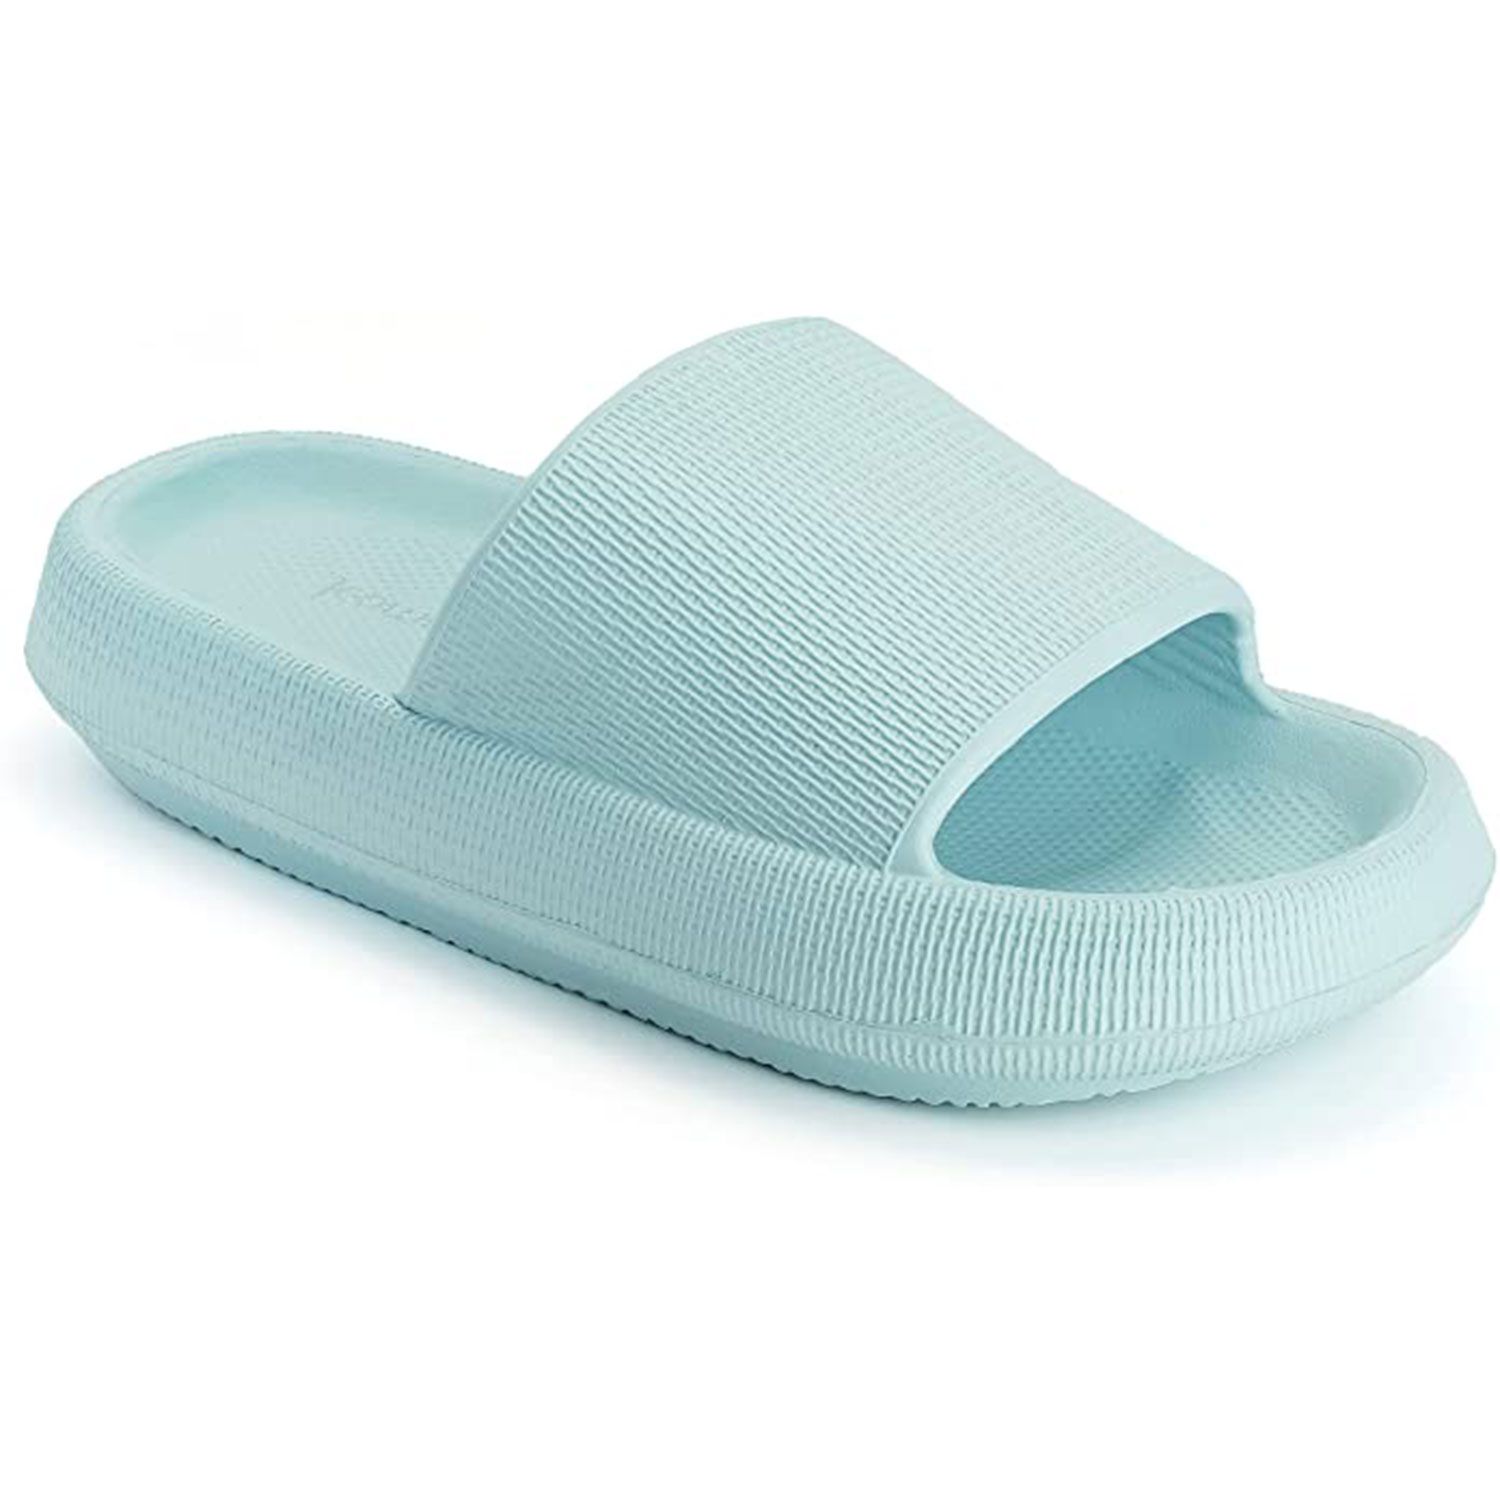 Joomra Pillow Slippers for Women and Men Non Slip Quick Drying Shower Slides